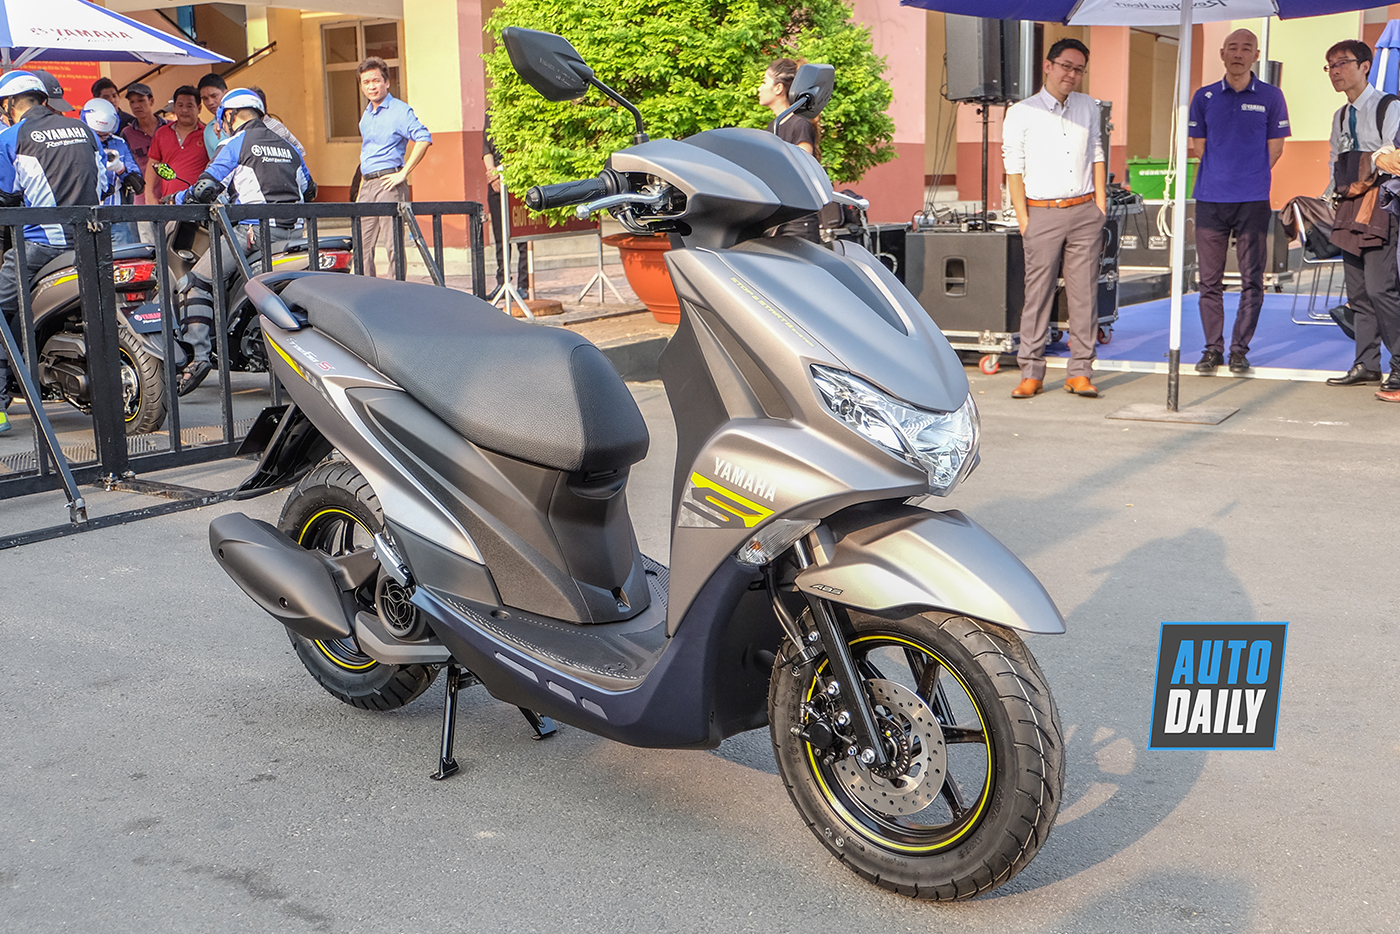 Yamaha Việt Nam ra mắt FreeGo xe tay ga 125cc ABS đồng hồ điện tử chưa  có giá bán